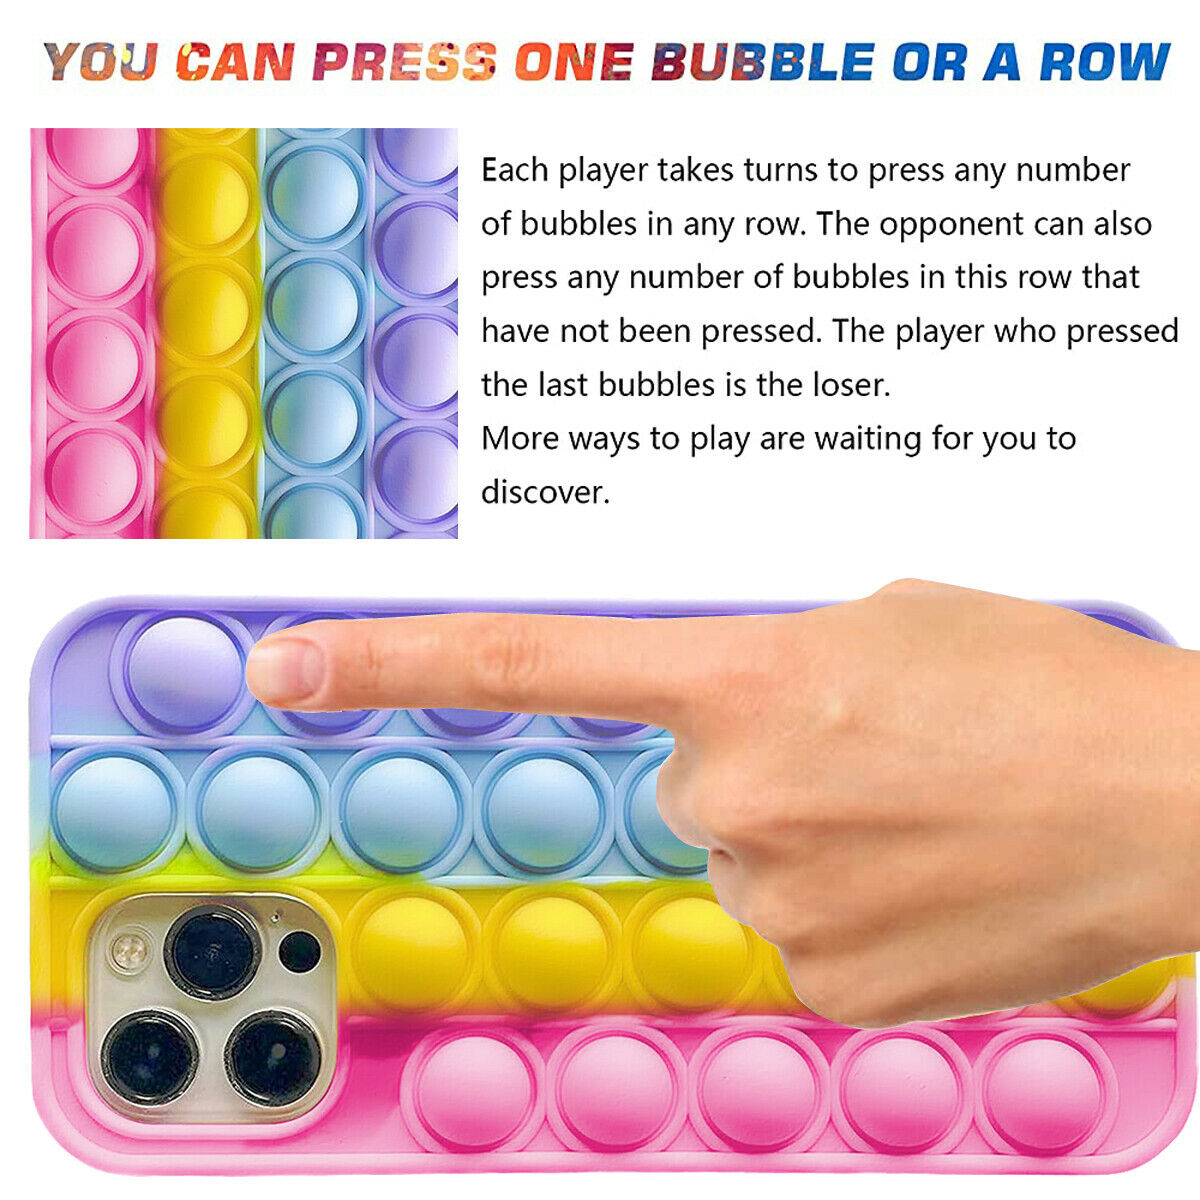 Fidget Push Pop Bubble Toys Phone Case For iPhone 12 Mini 5.4